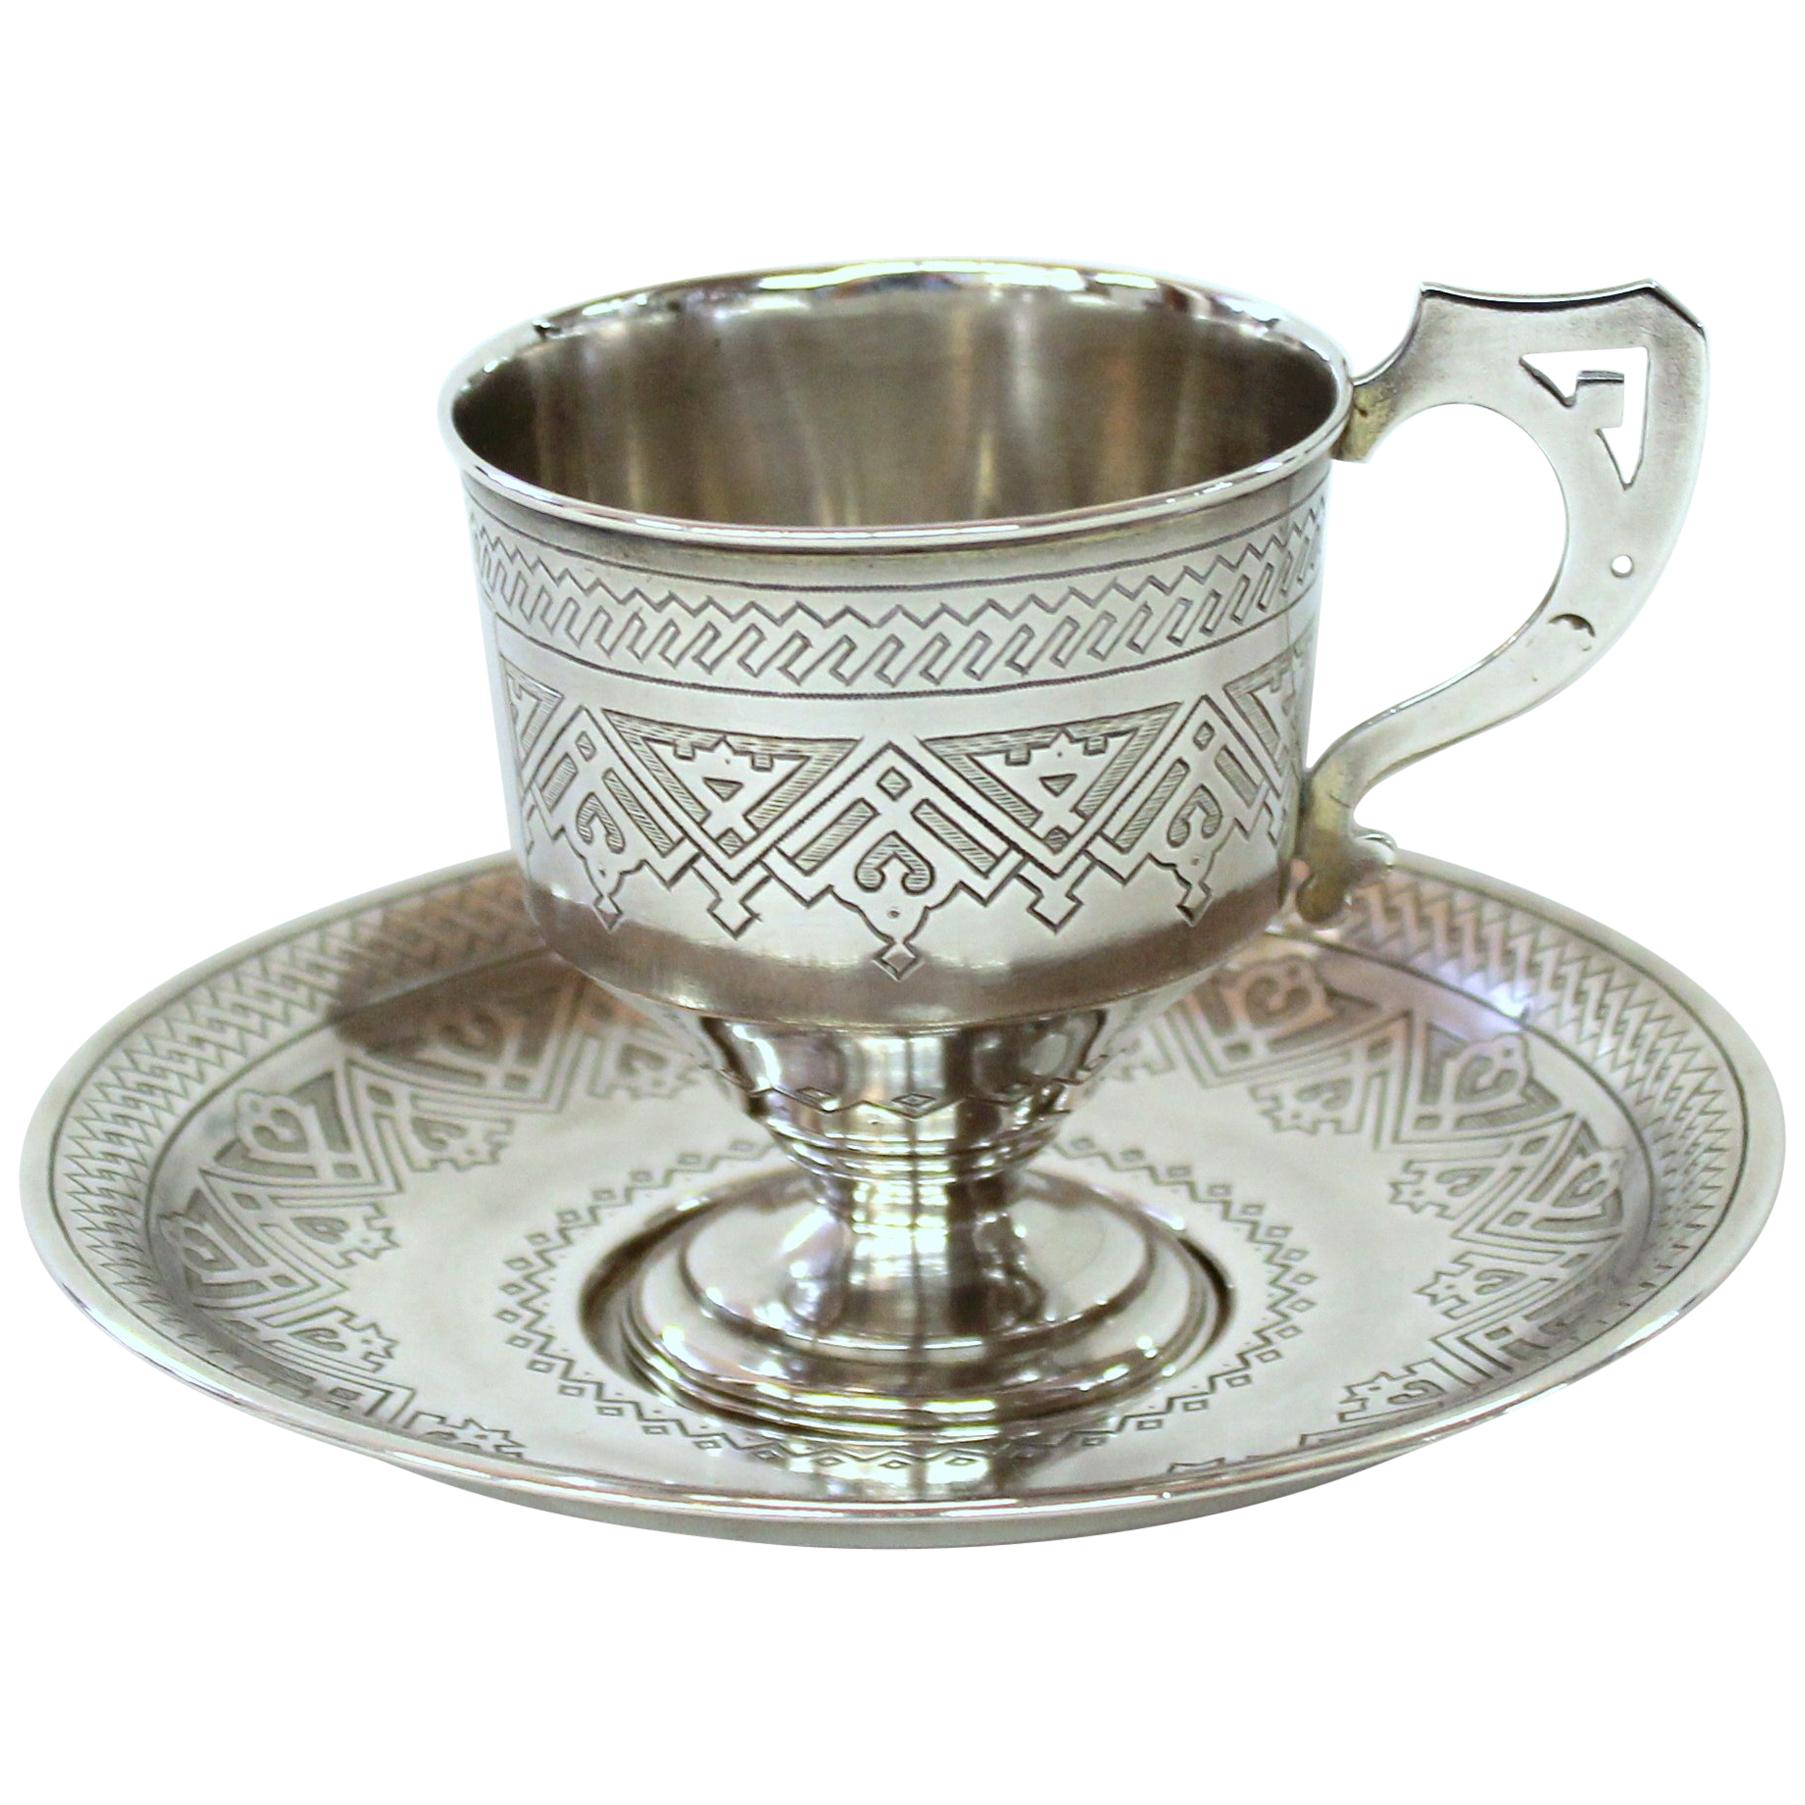 Antigua taza y platillo imperiales rusos de plata grabados a mano, Aleksandr Fuld